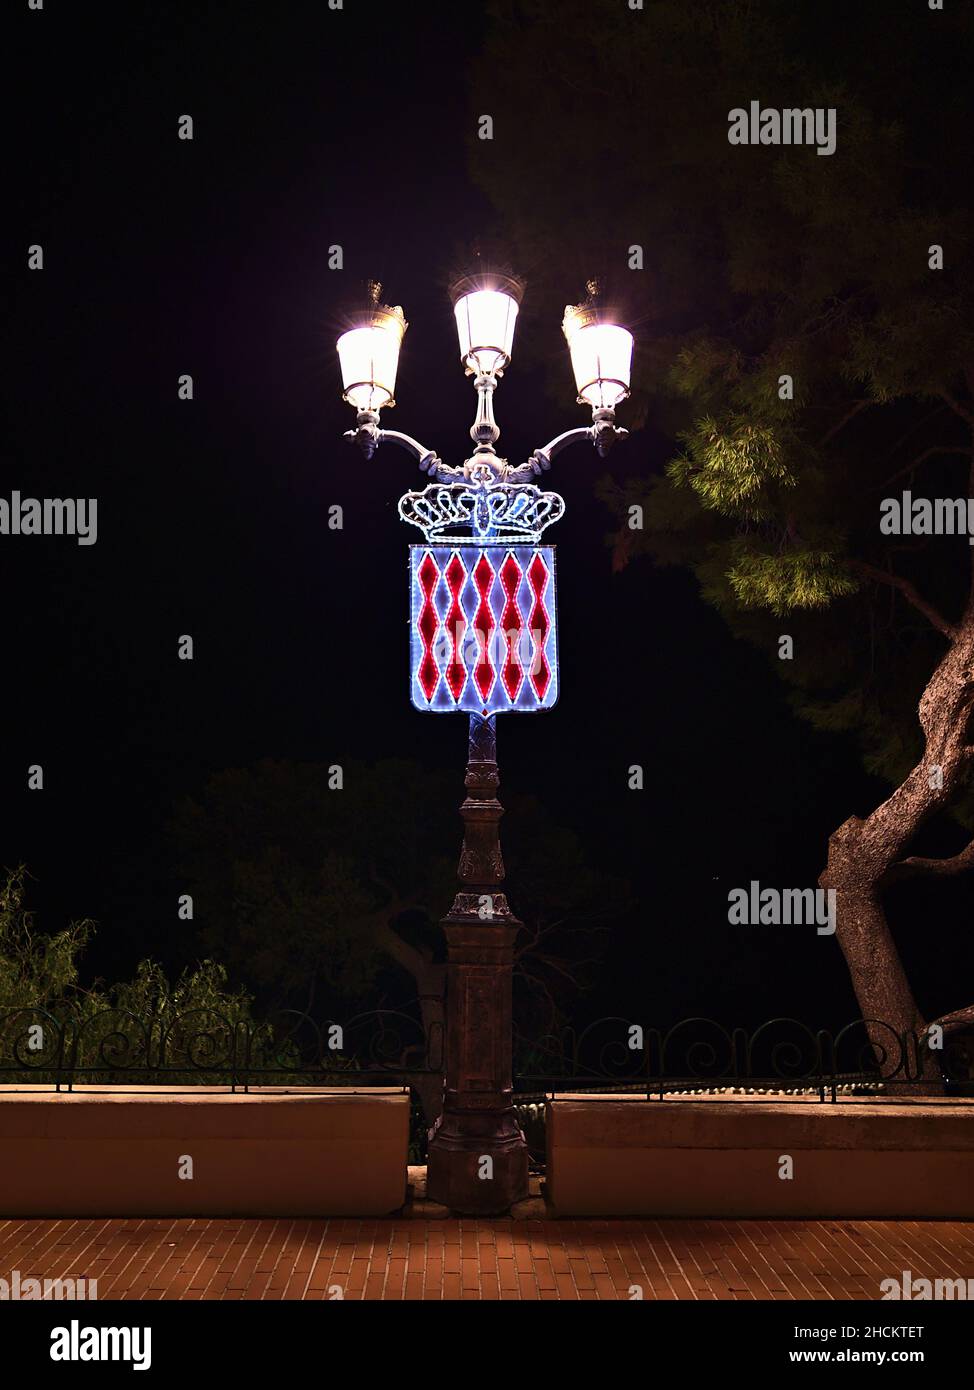 Vue de face de l'ancienne lumière de rue en fer la nuit dans le centre historique de Monaco (Monaco-ville) sur la Côte d'Azur avec les armoiries illuminées. Banque D'Images